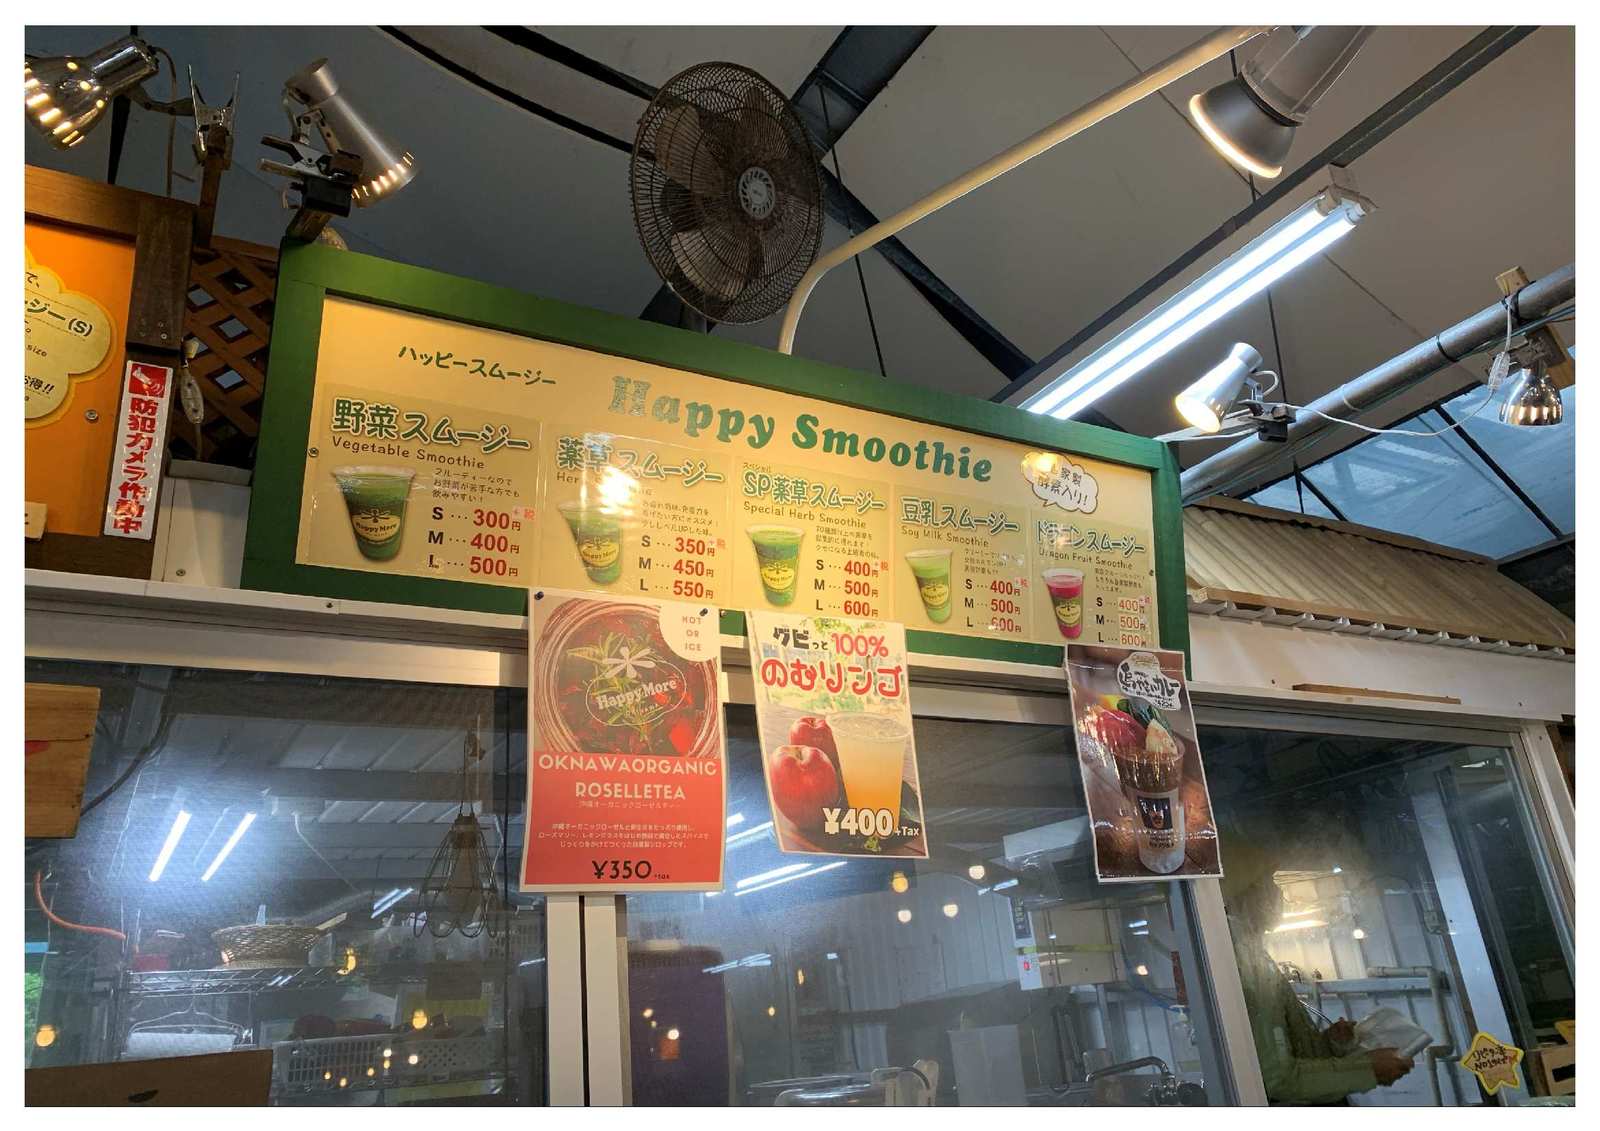 《ハッピーモアのスムージー券プレゼント》宜野湾市で人気のHappyMoreとのコラボプラン《朝食付》